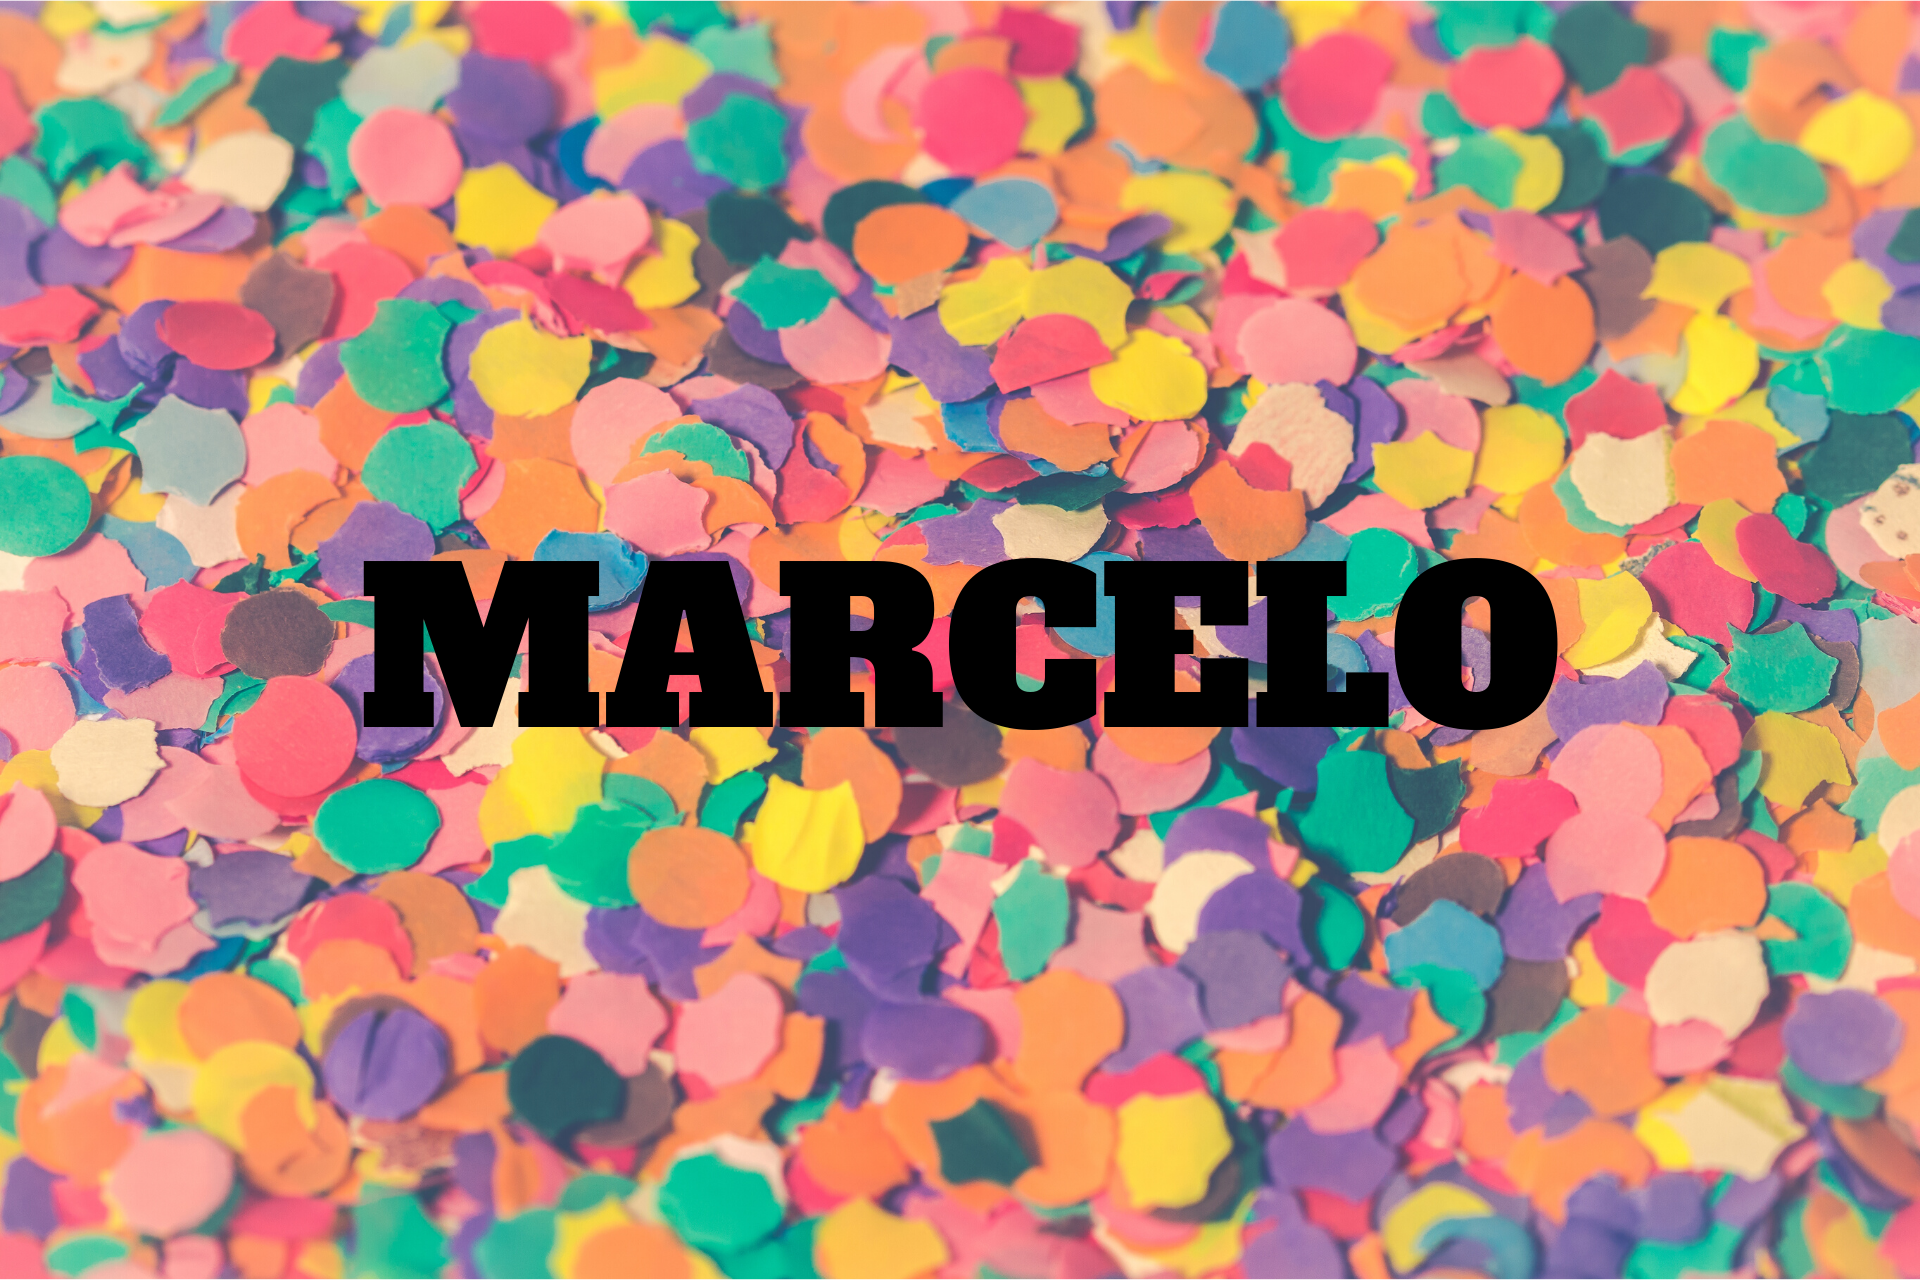  Marcelo pomen - izvor imena, zgodovina, osebnost in priljubljenost